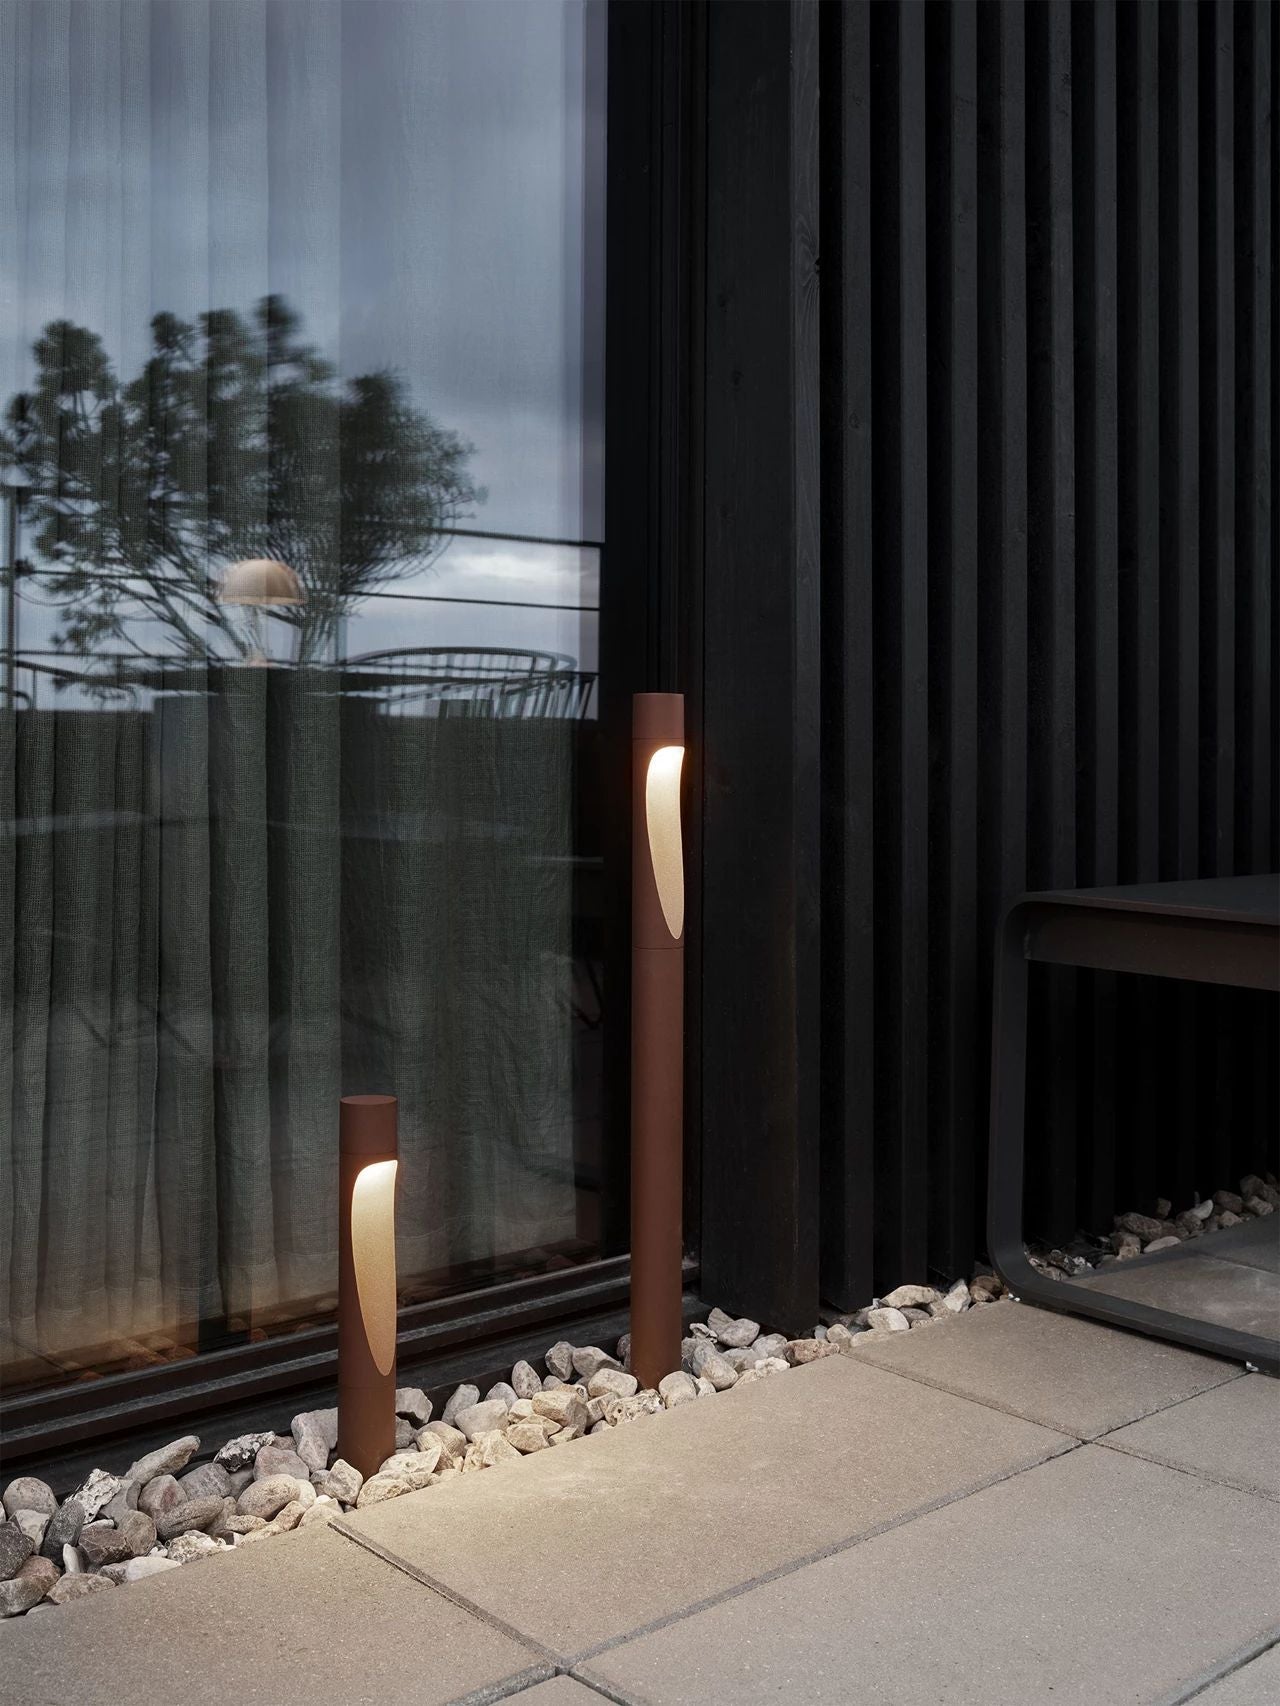 Louis Poulsen Flindt Garden Bollard LED 3000 K 6,5 W Anker mit Adapter lang, Aluminium